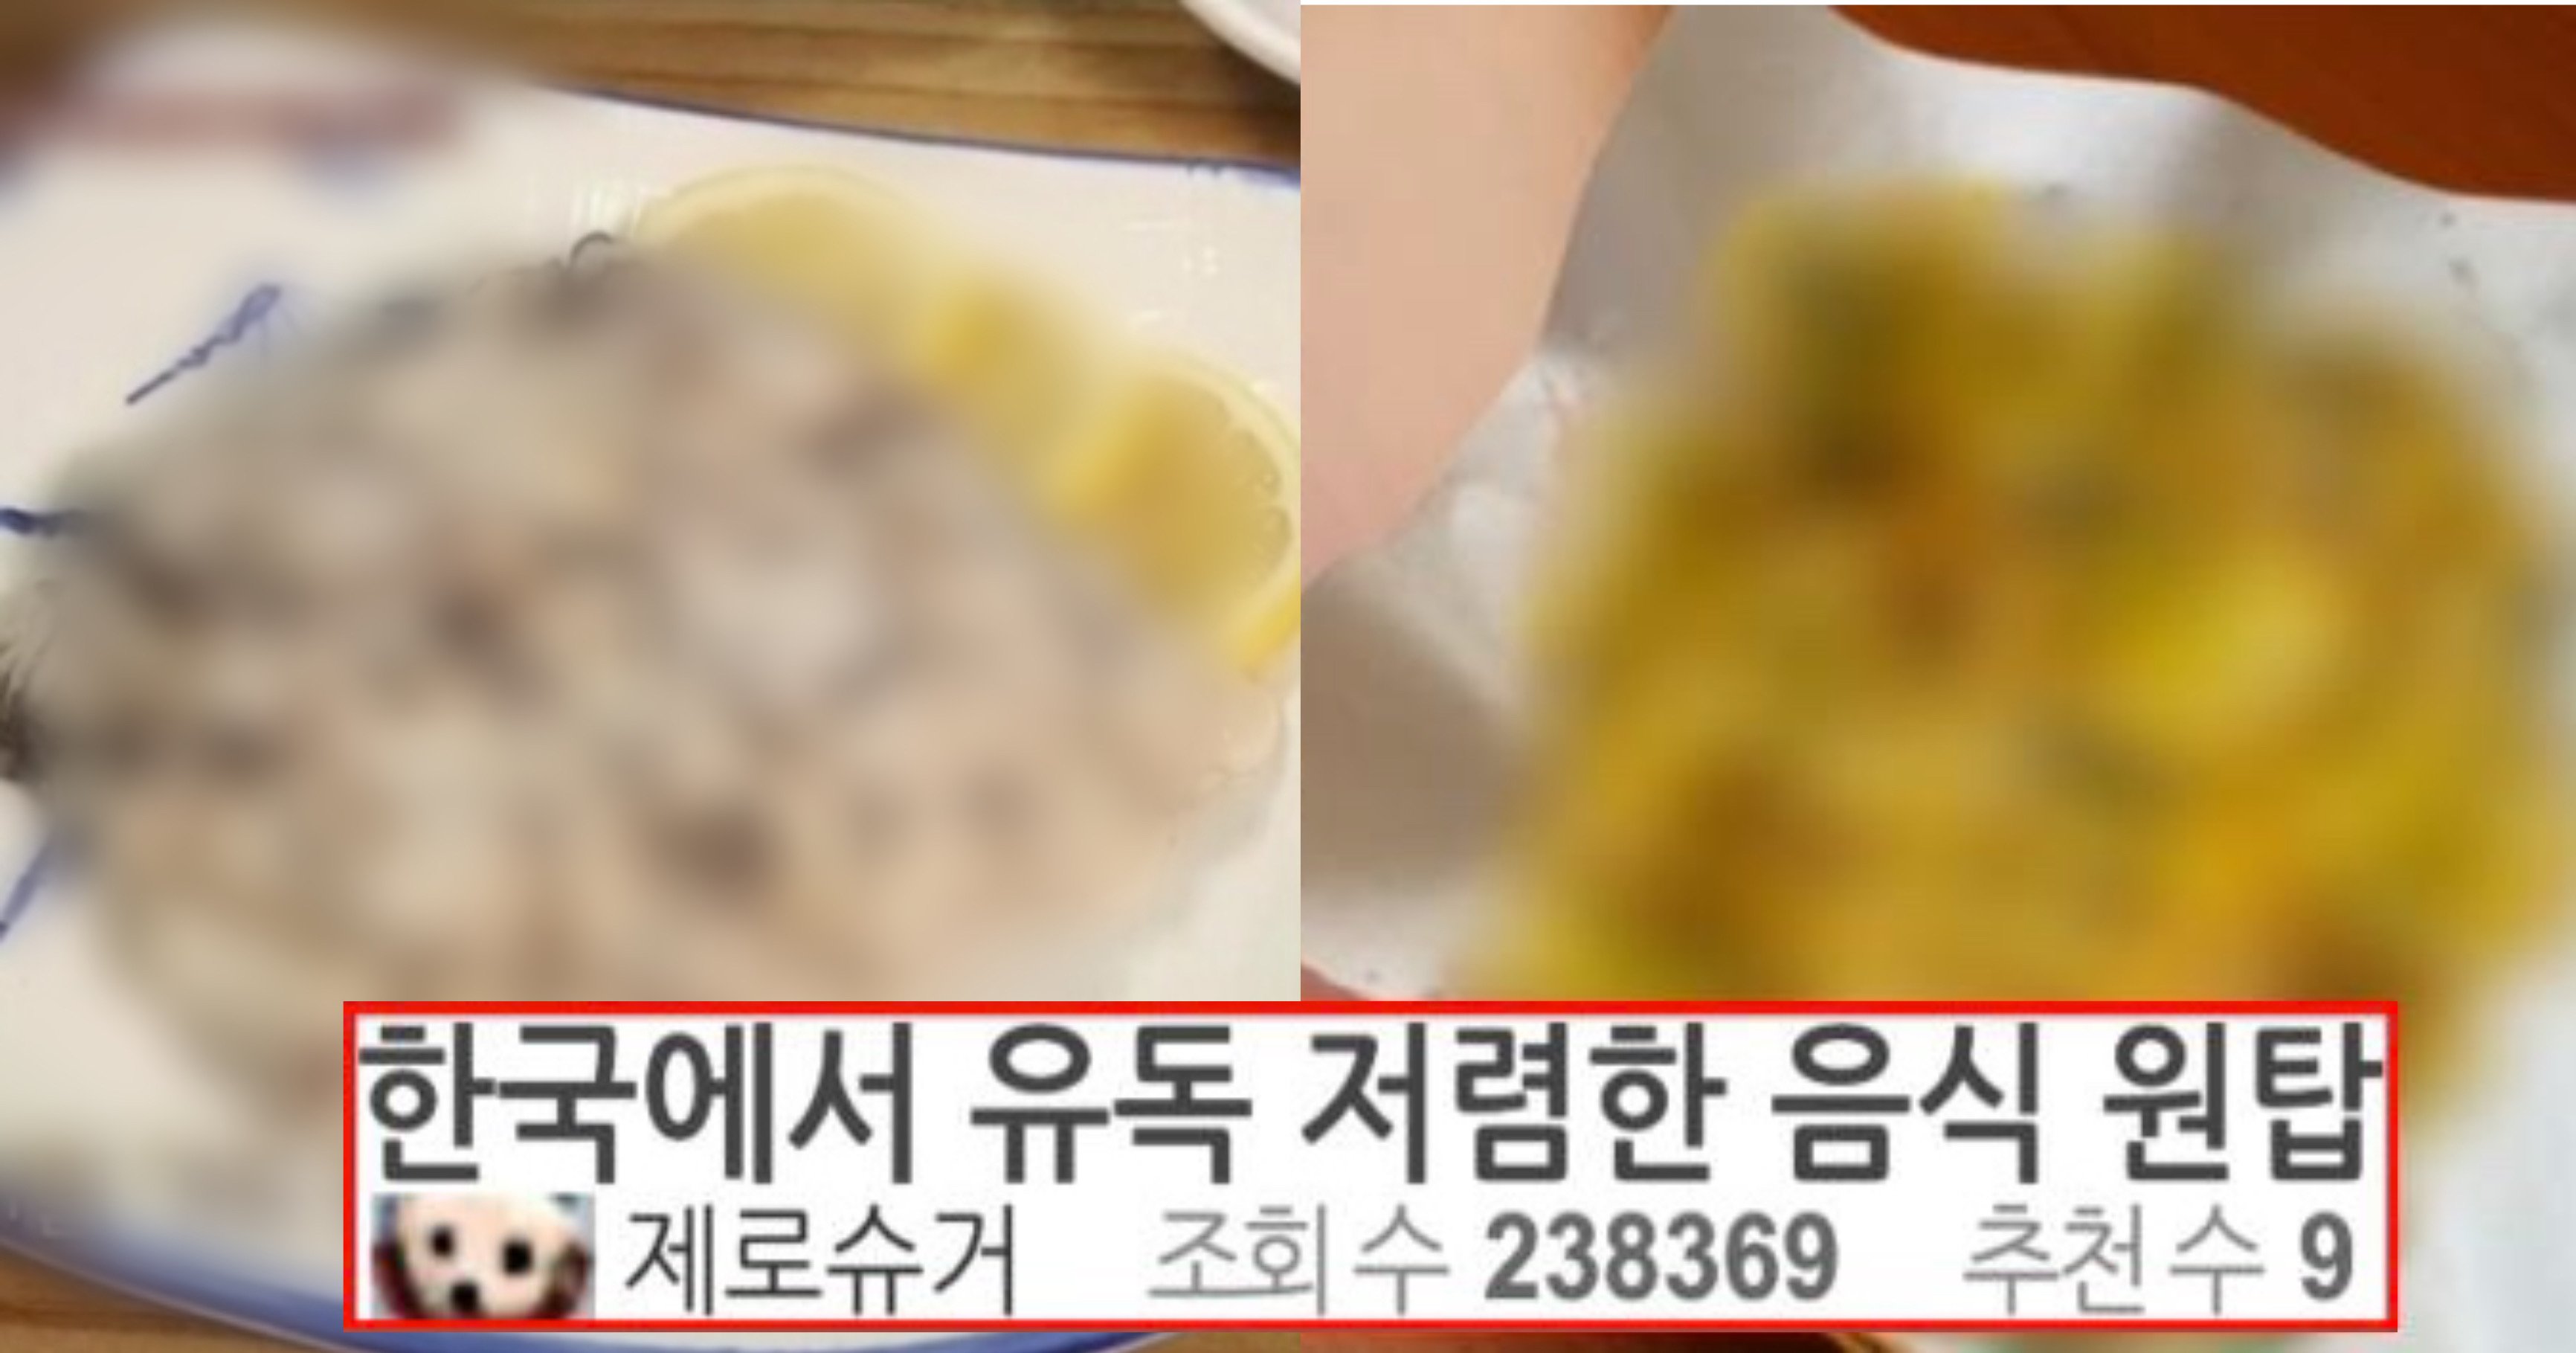 ff0ed498 bb8e 46a6 afdc 35823de8cb87.jpeg?resize=1200,630 - "이 음식 좋아하는 사람?" 외국에서는 금 값인데 한국에서는 유독 저렴한 음식